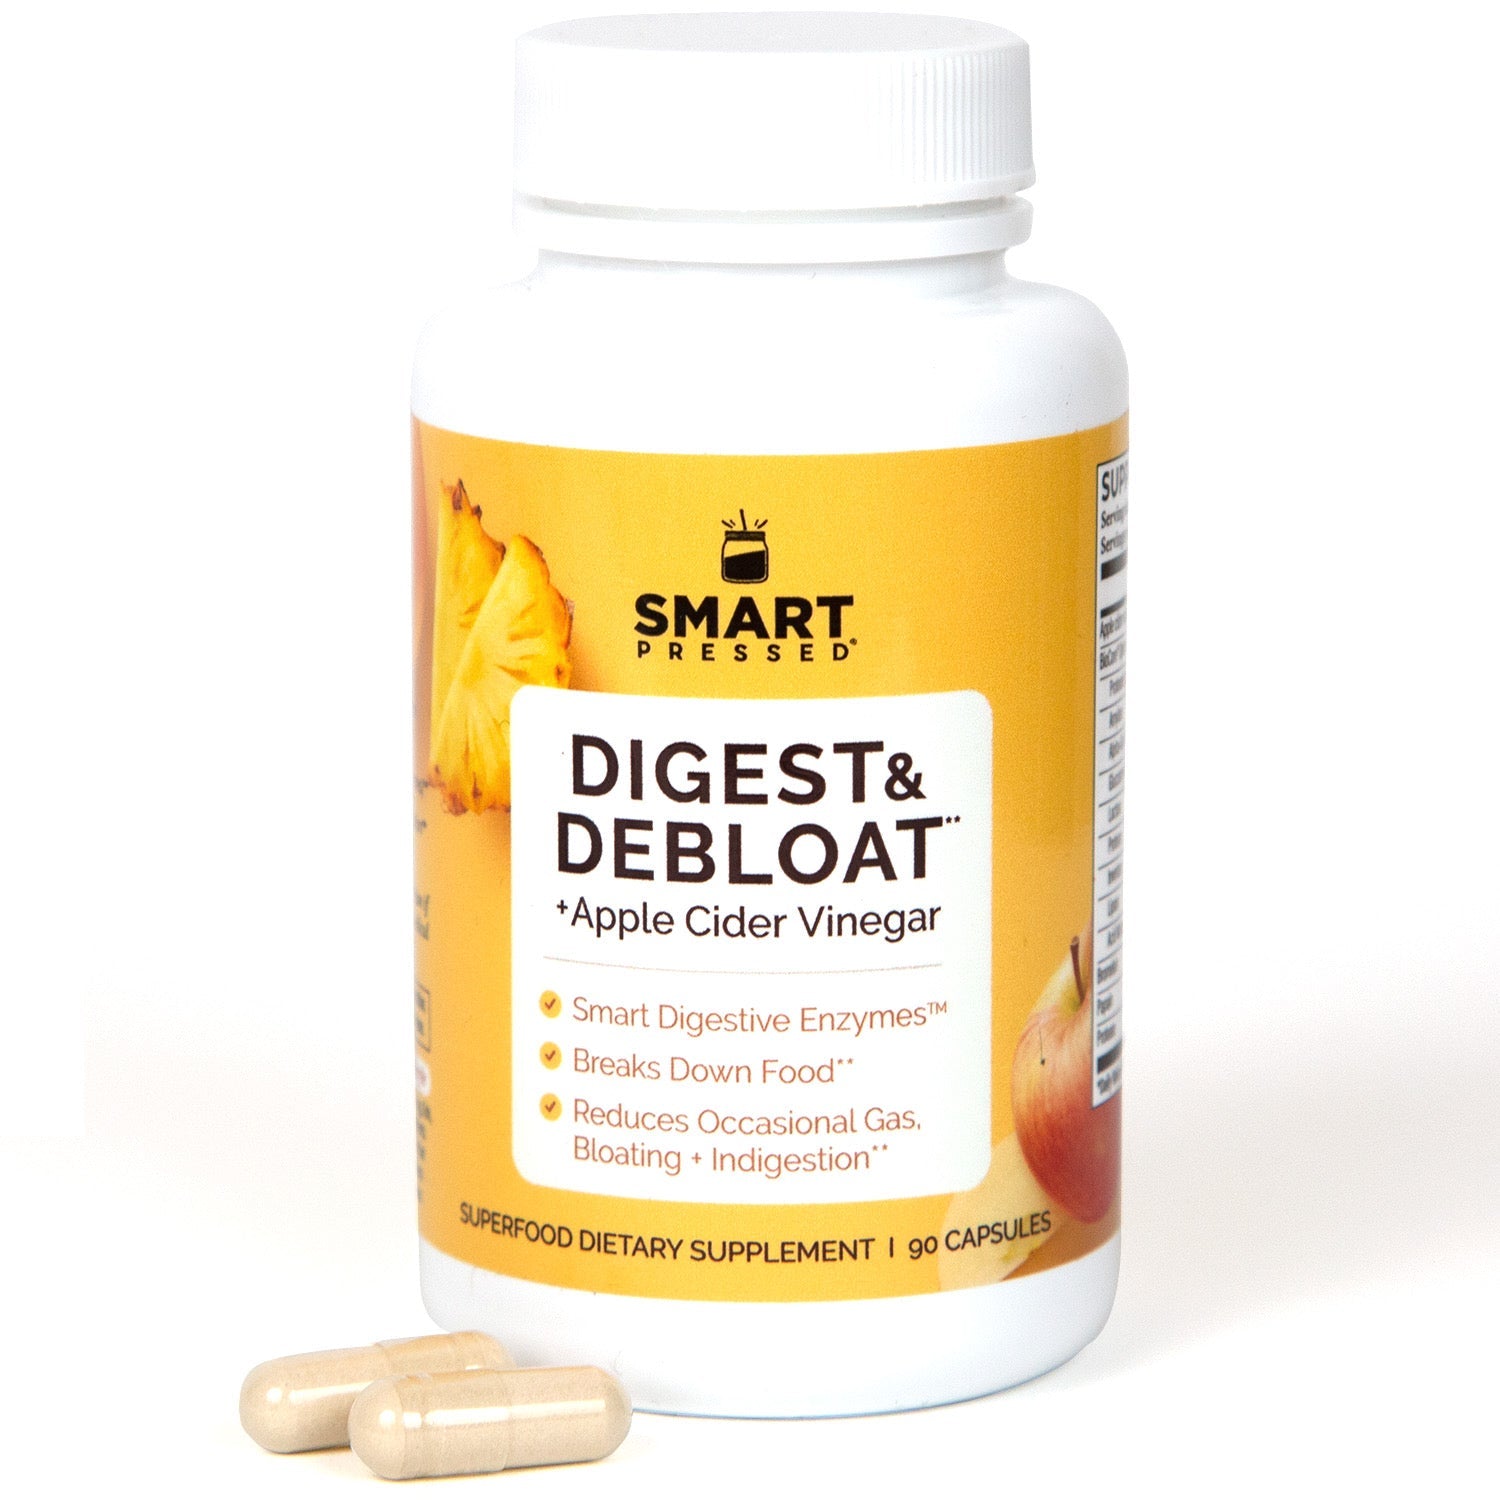 Digest & Debloat + Apple Cider Vinegar (25% OFF)